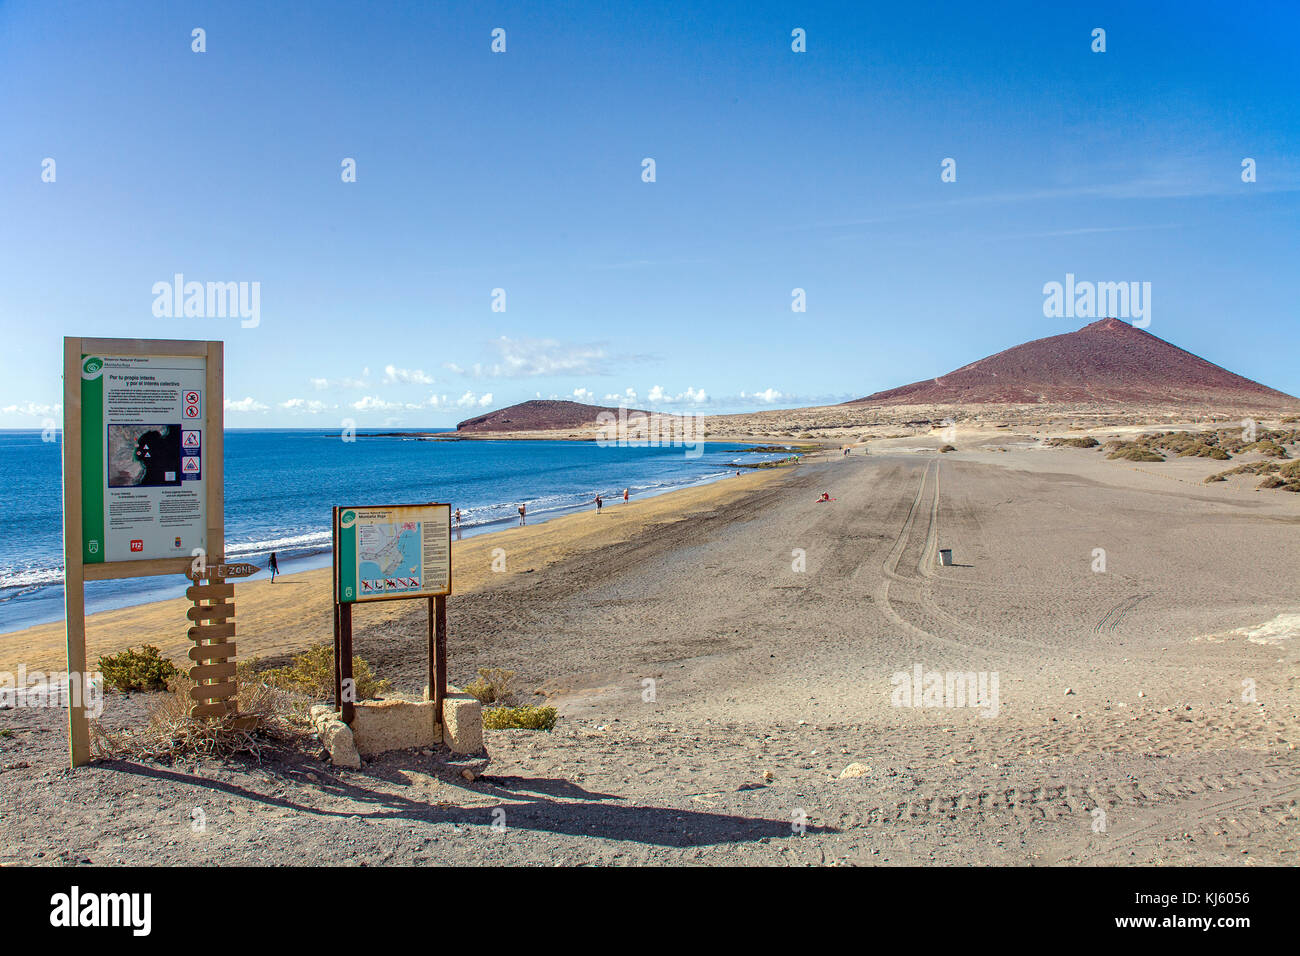 Zone d'administration du cerf-volant sur la plage d'El Medano, une populaire destination surfer sur l'île de Tenerife, Canaries, Espagne Banque D'Images